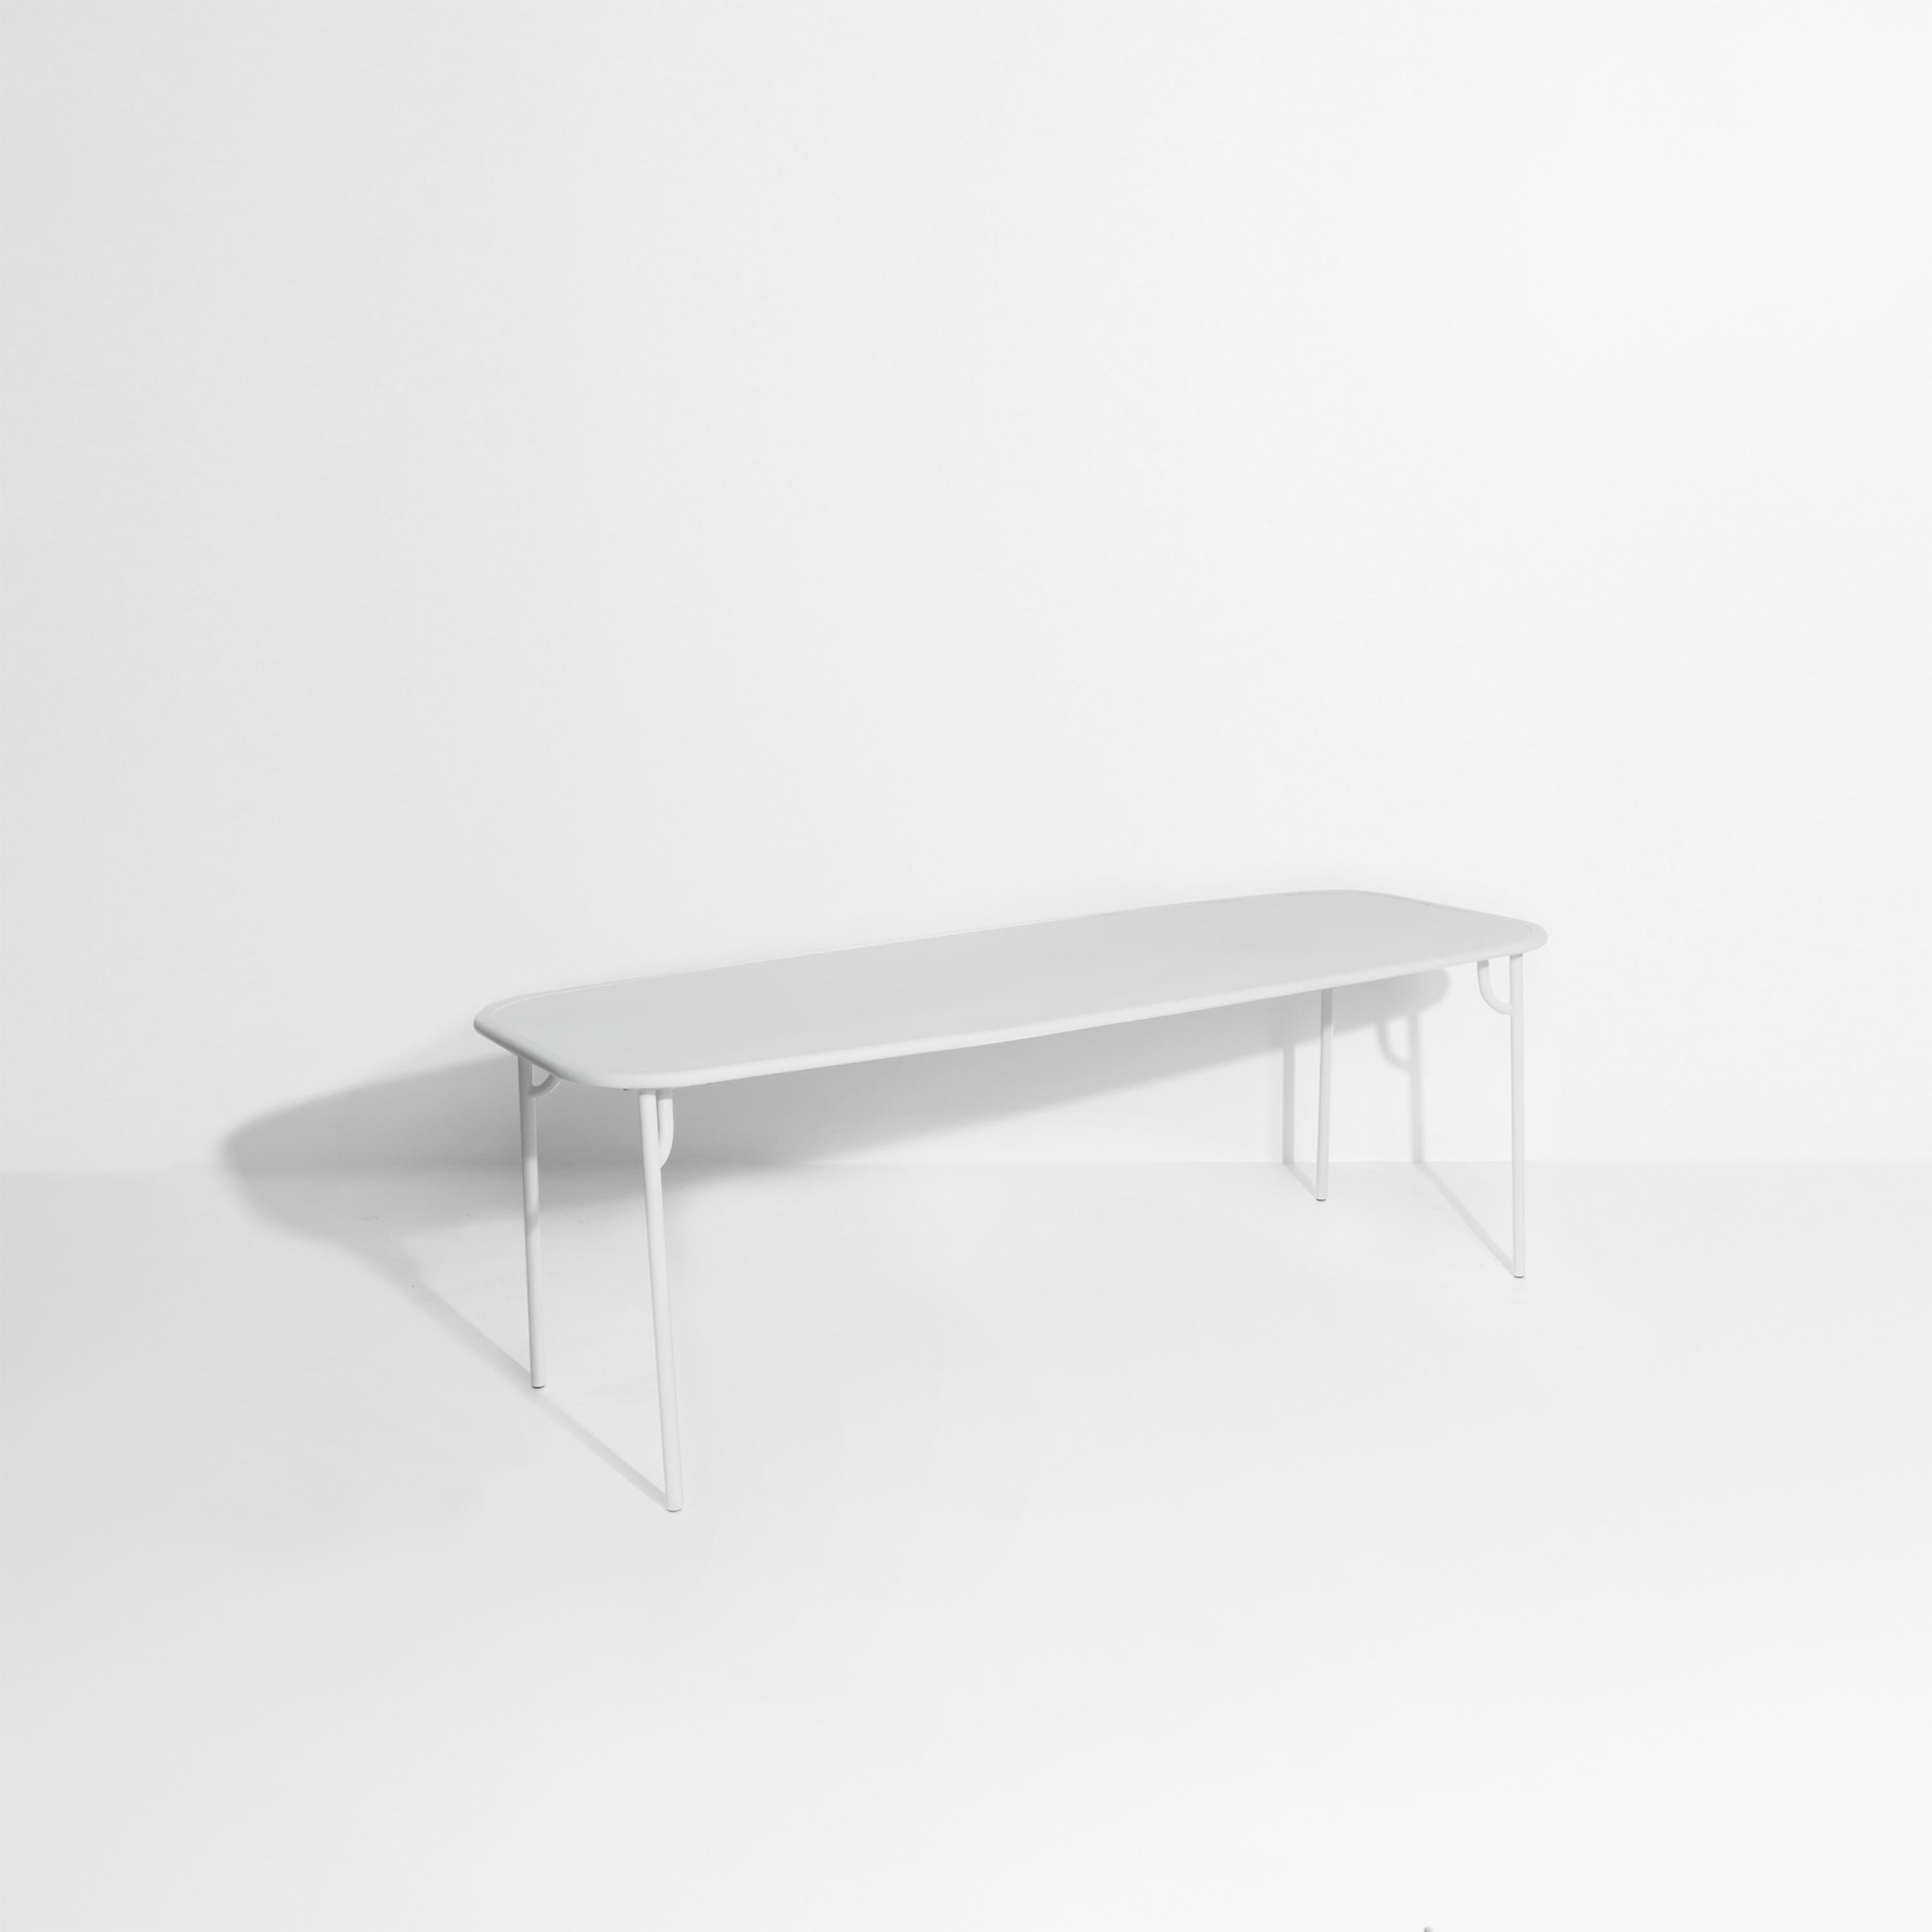 Petite Friture Week-End Large Plain Rectangular Dining Table in Pearl Grey Aluminium by Studio BrichetZiegler, 2017

Die Week-End-Kollektion besteht aus einer kompletten Palette von Außenmöbeln mit mattierter Epoxidharzlackierung mit